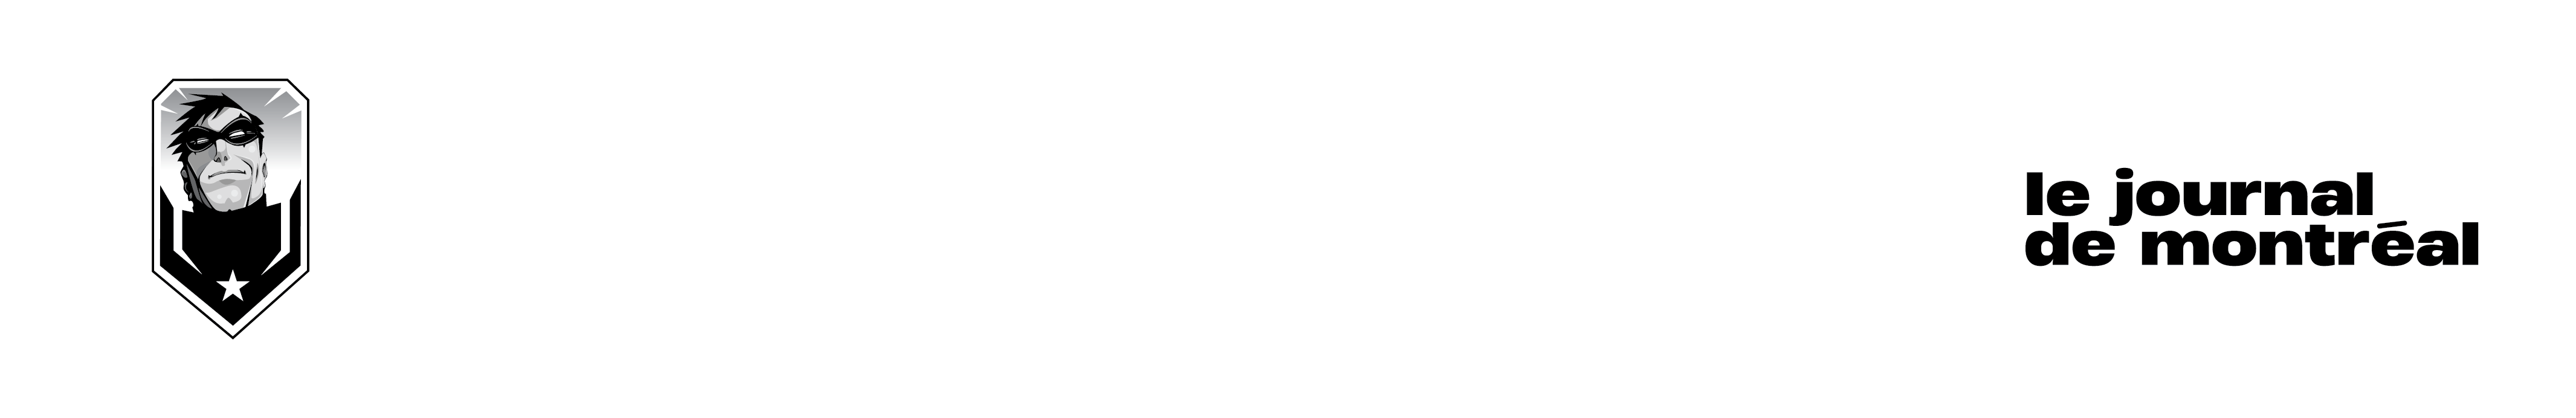 deadline EN 2018 - Comiccon de Montréal